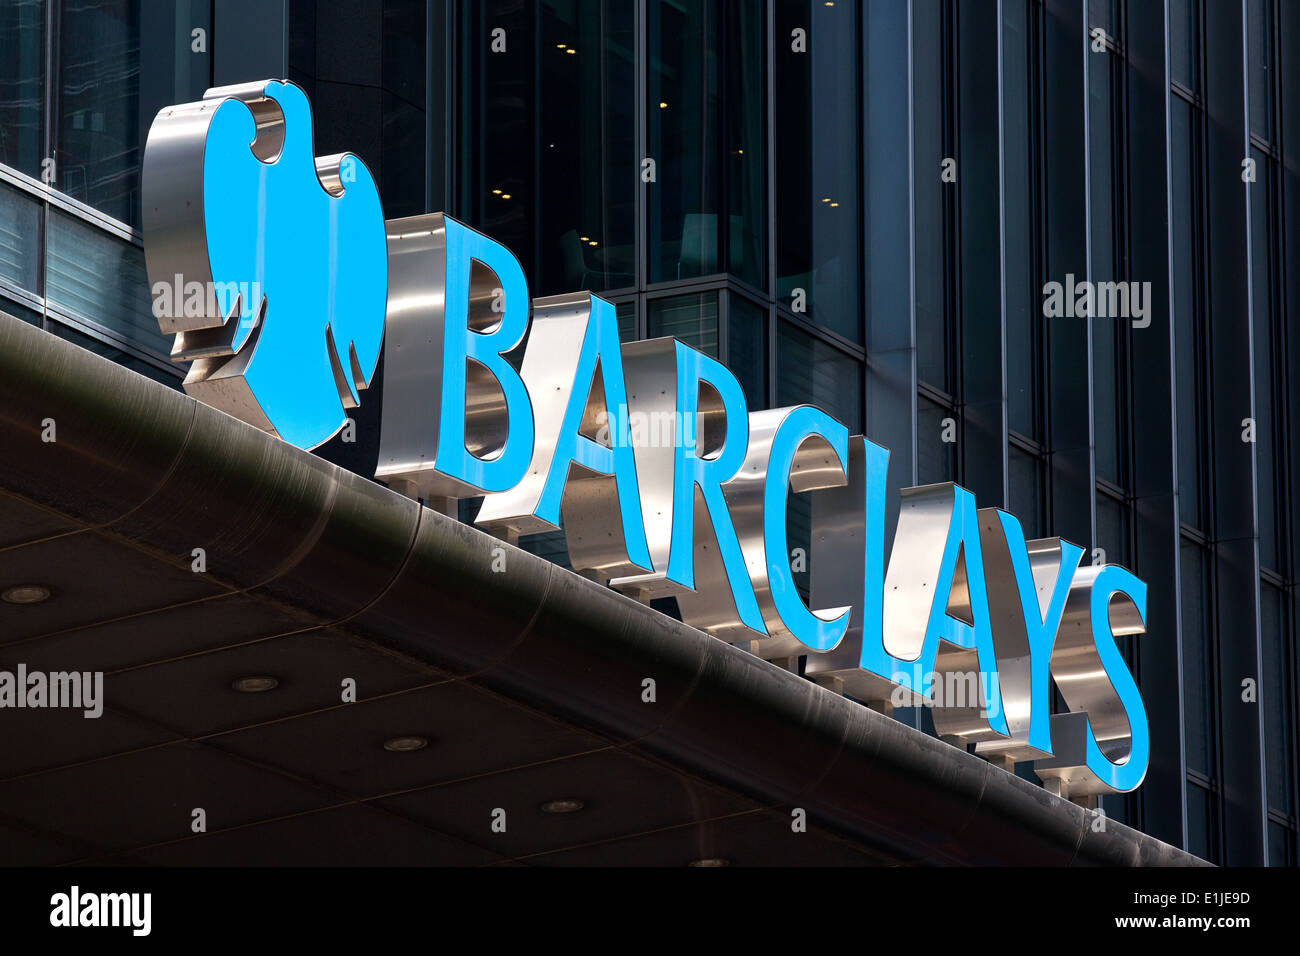 La banque Barclays affiche à l'extérieur de l'administration centrale à Canary Wharf de Londres. Banque D'Images